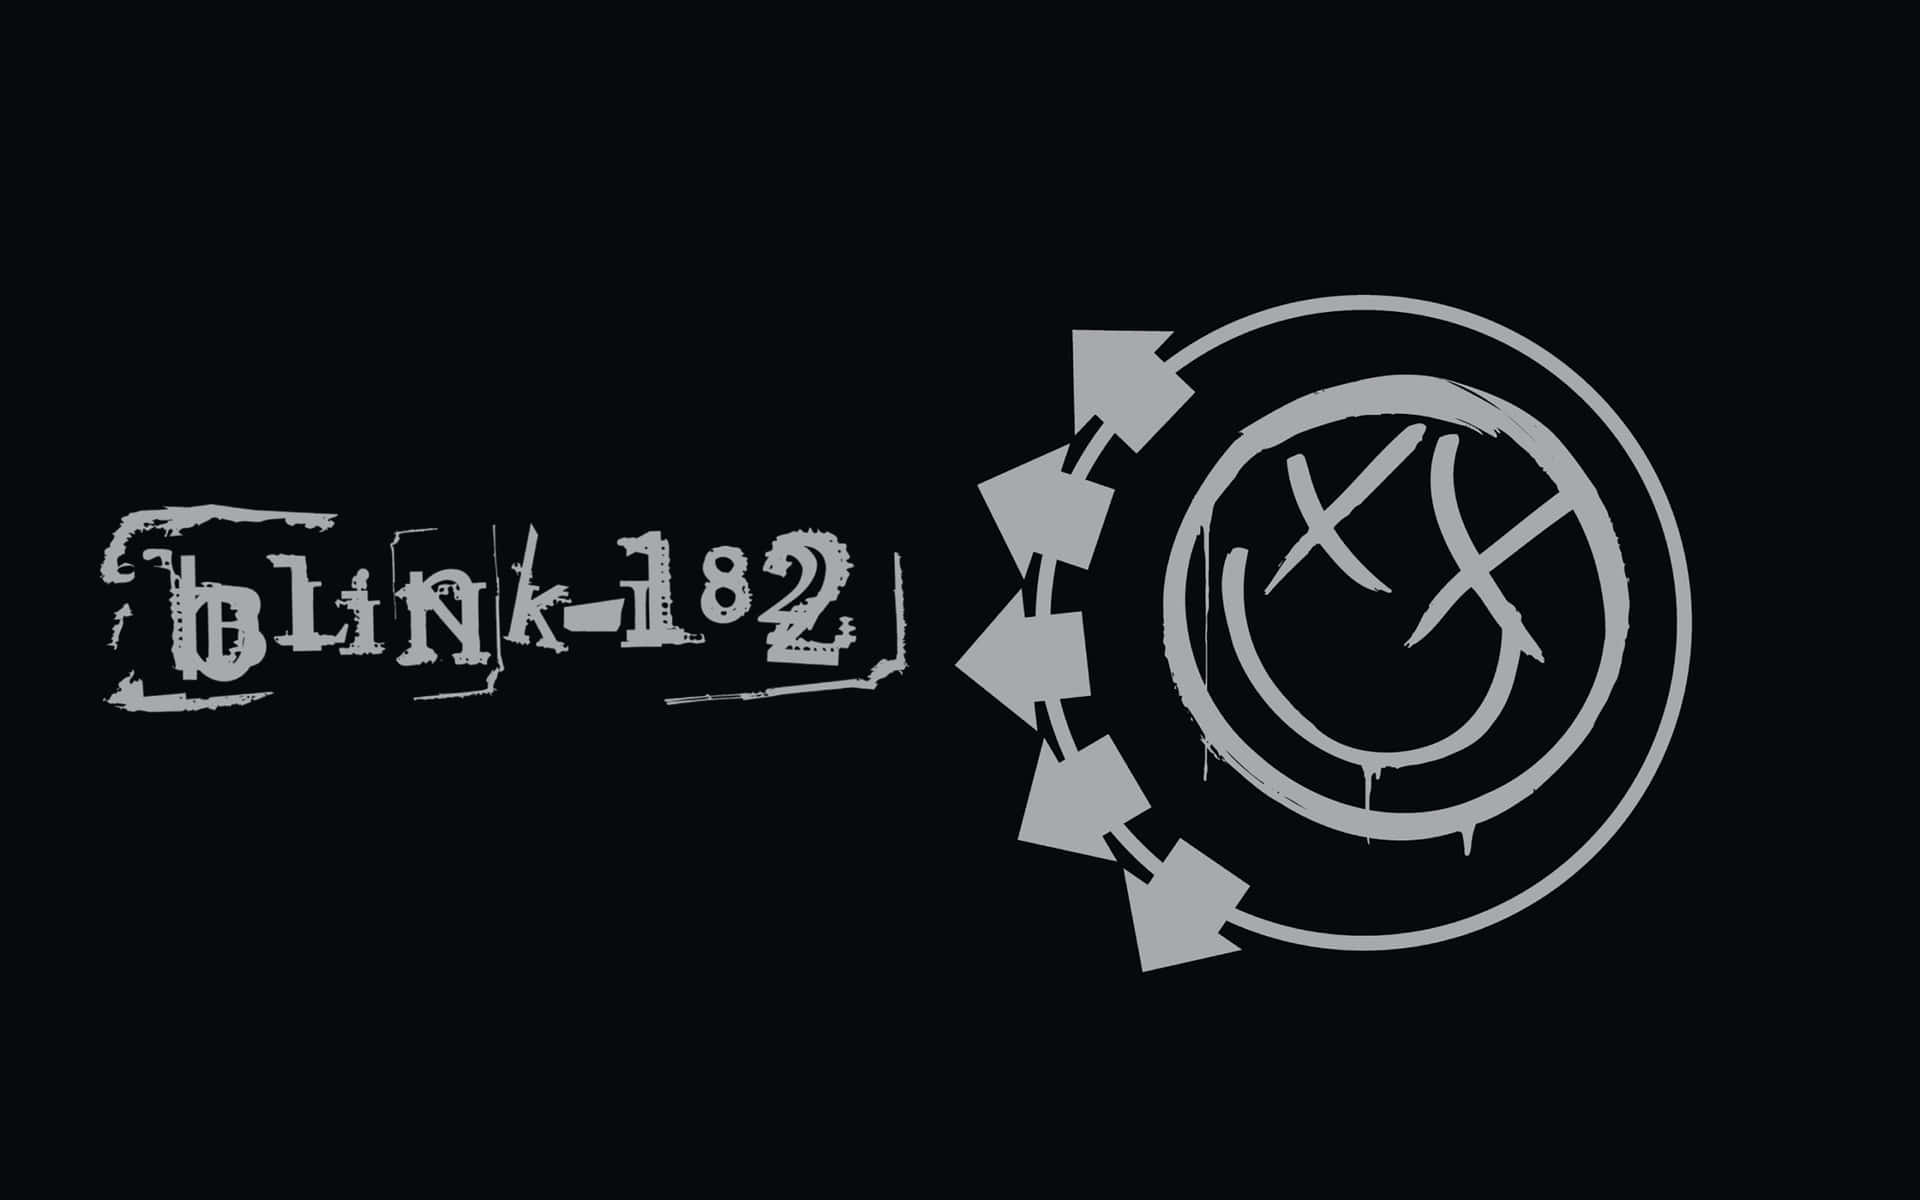 Blink182 Band Logo Wallpaper